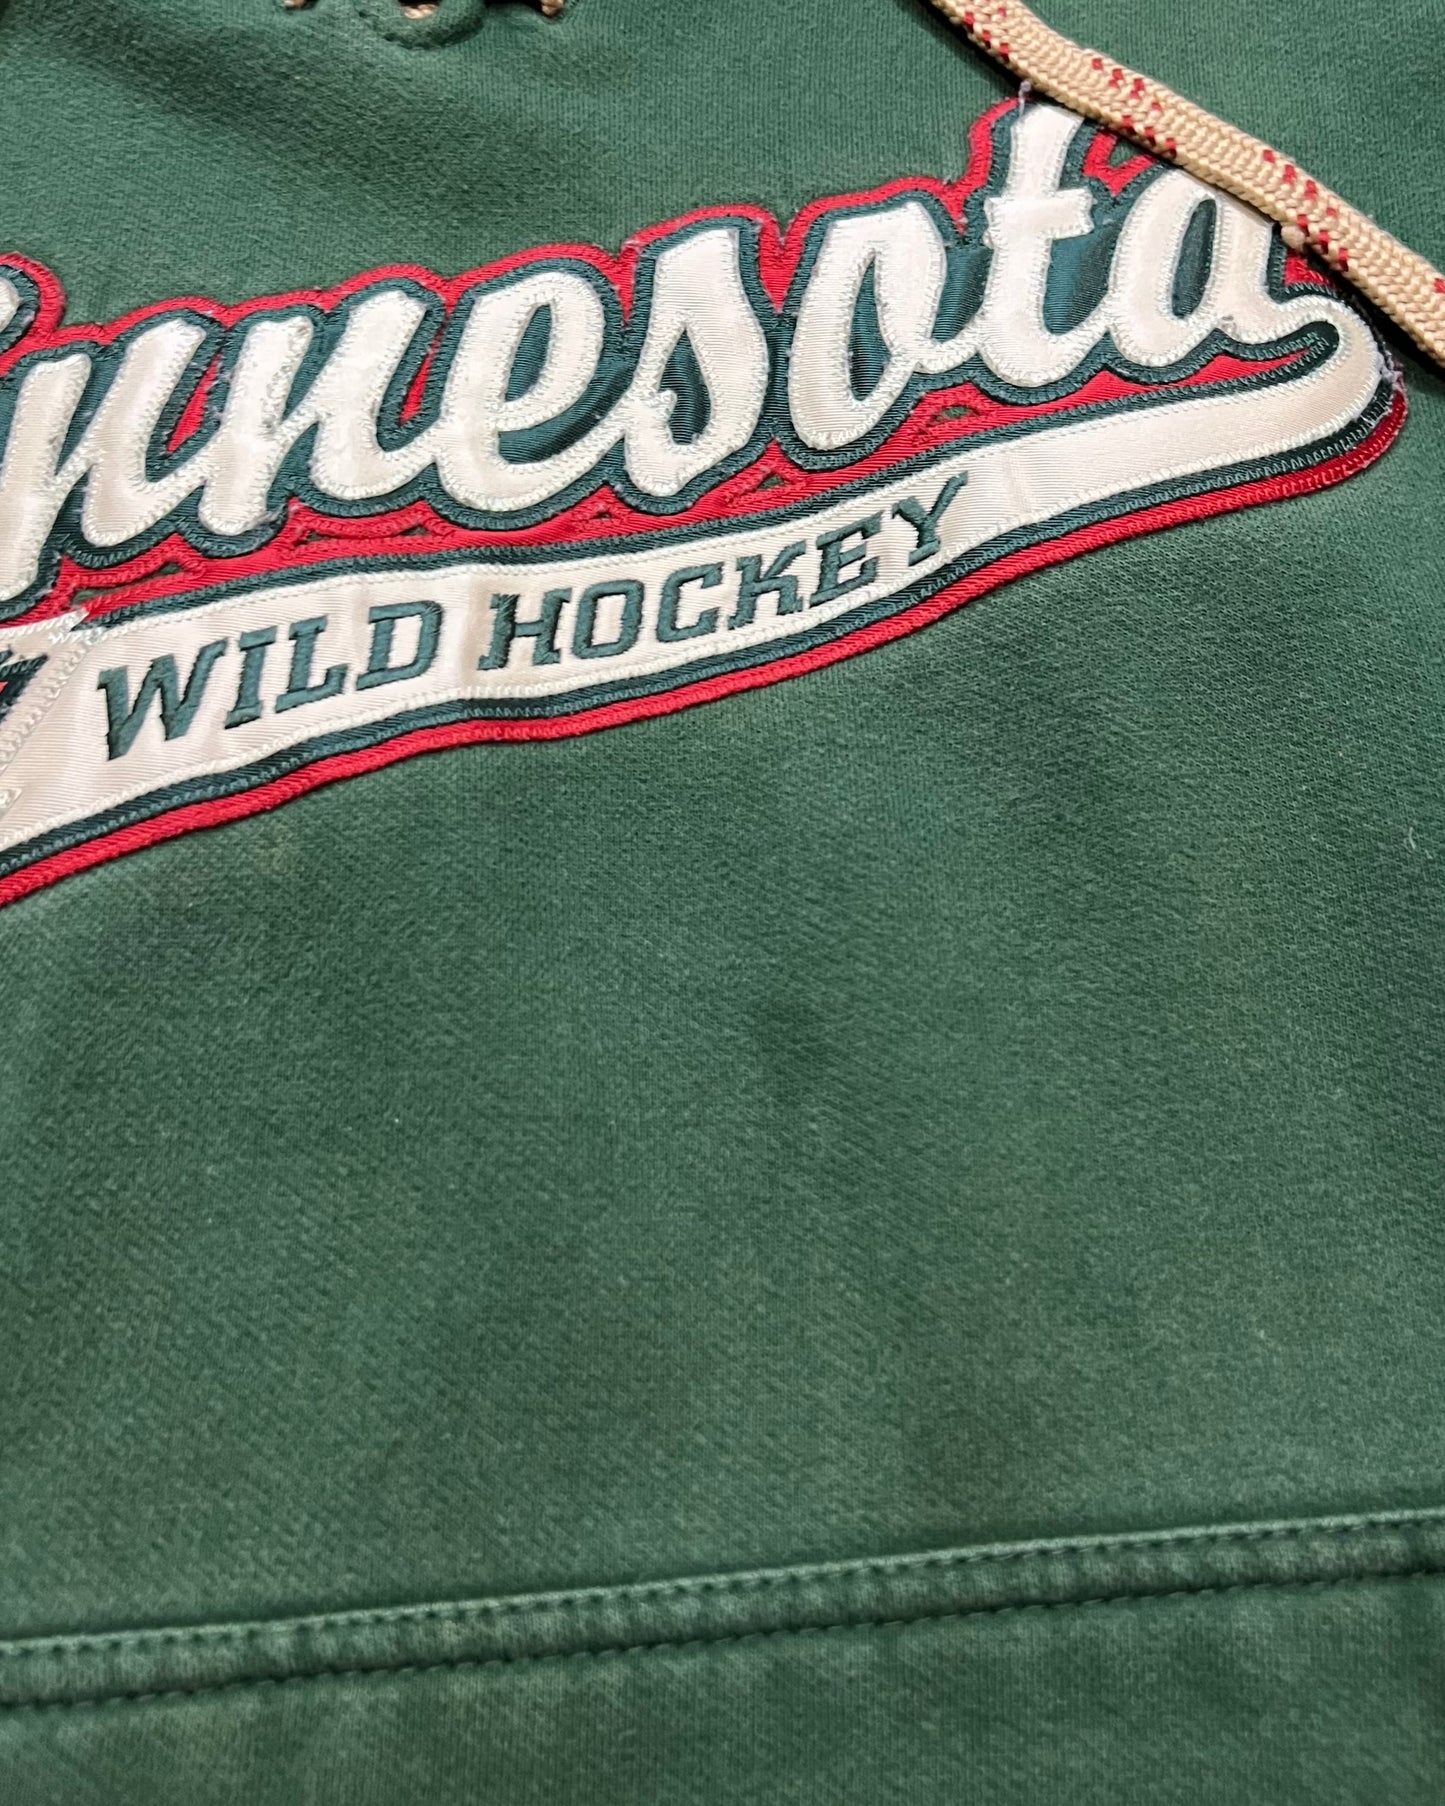 Vintage Minnesota Wild Hockey Hoodie